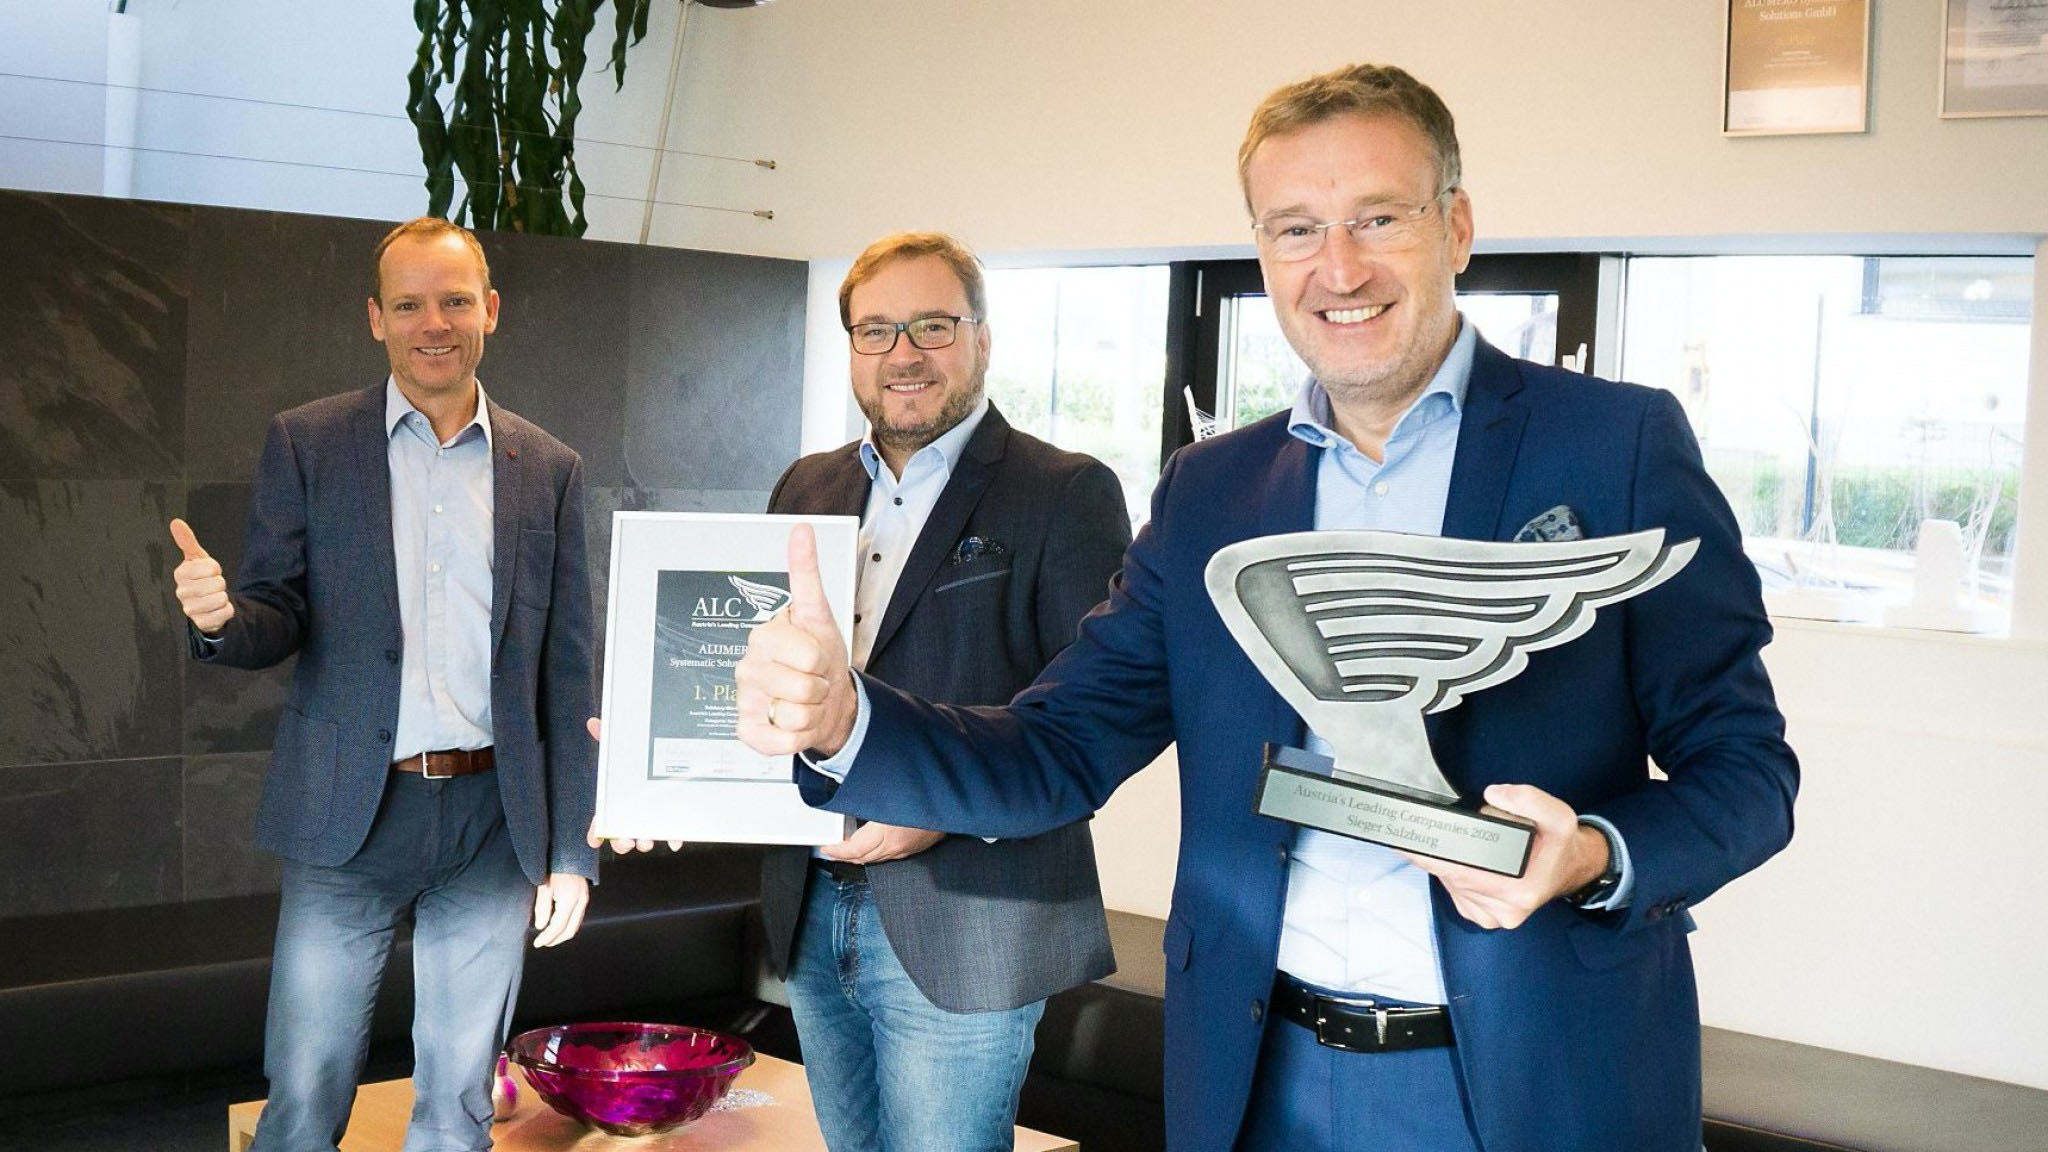 Primer premio en el Austria's Leading Companies Award